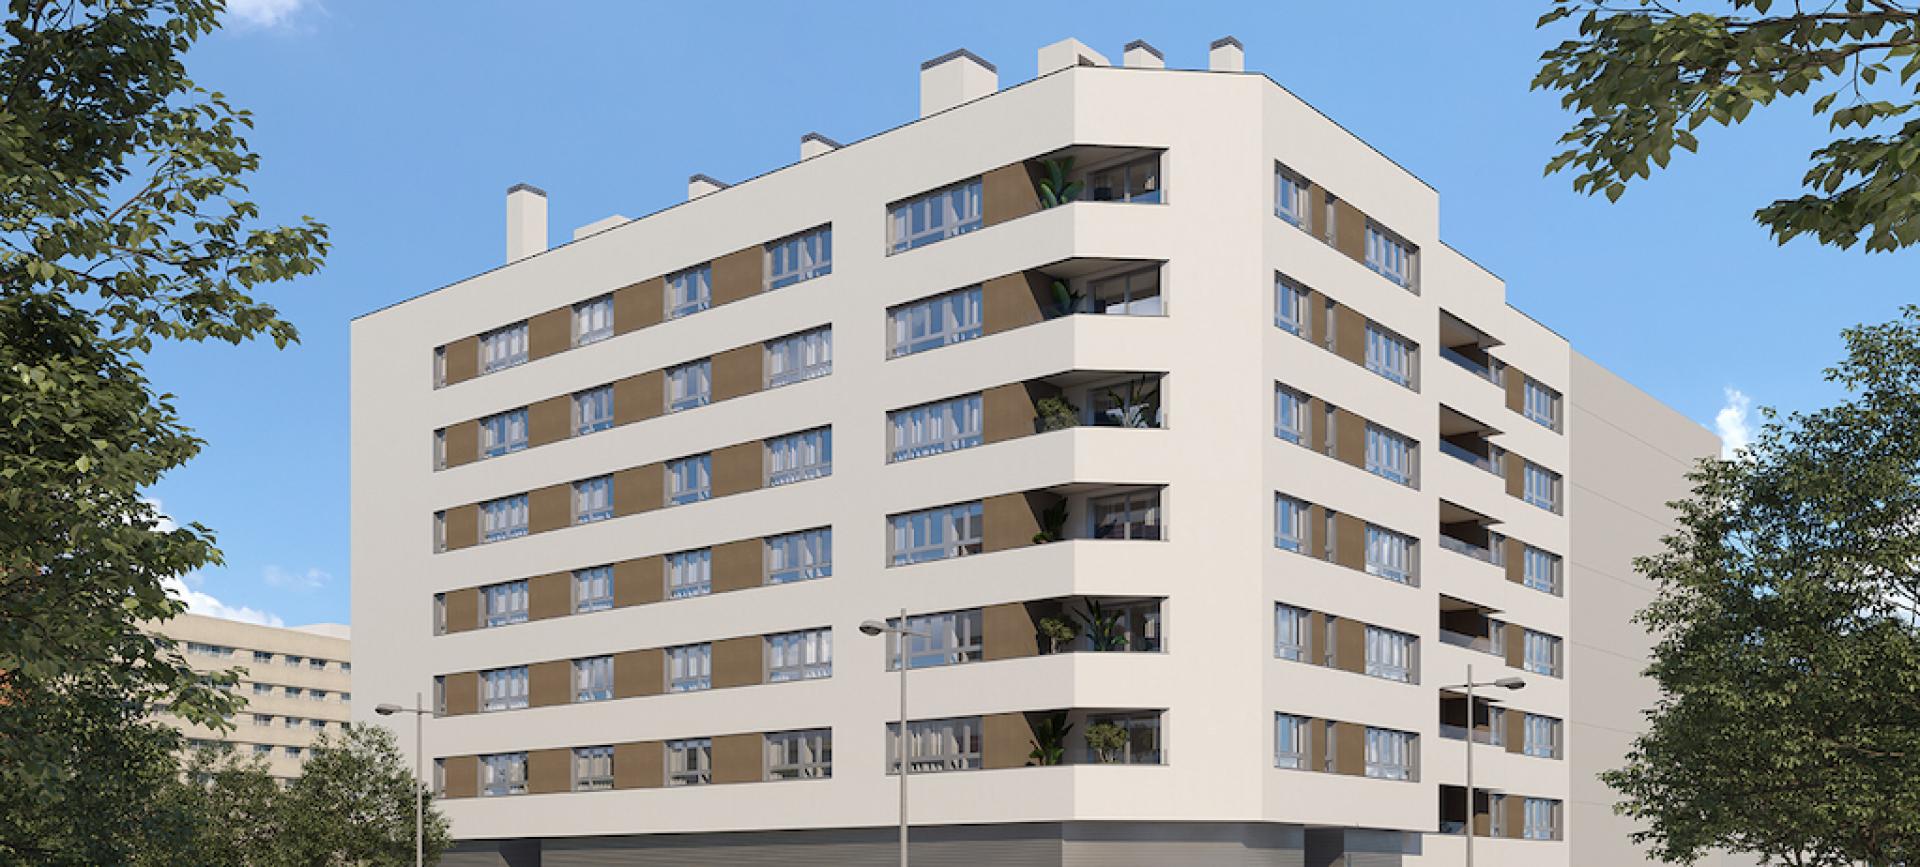 3 slaapkamer Appartement met terras in Alicante - Nieuwbouw in Medvilla Spanje